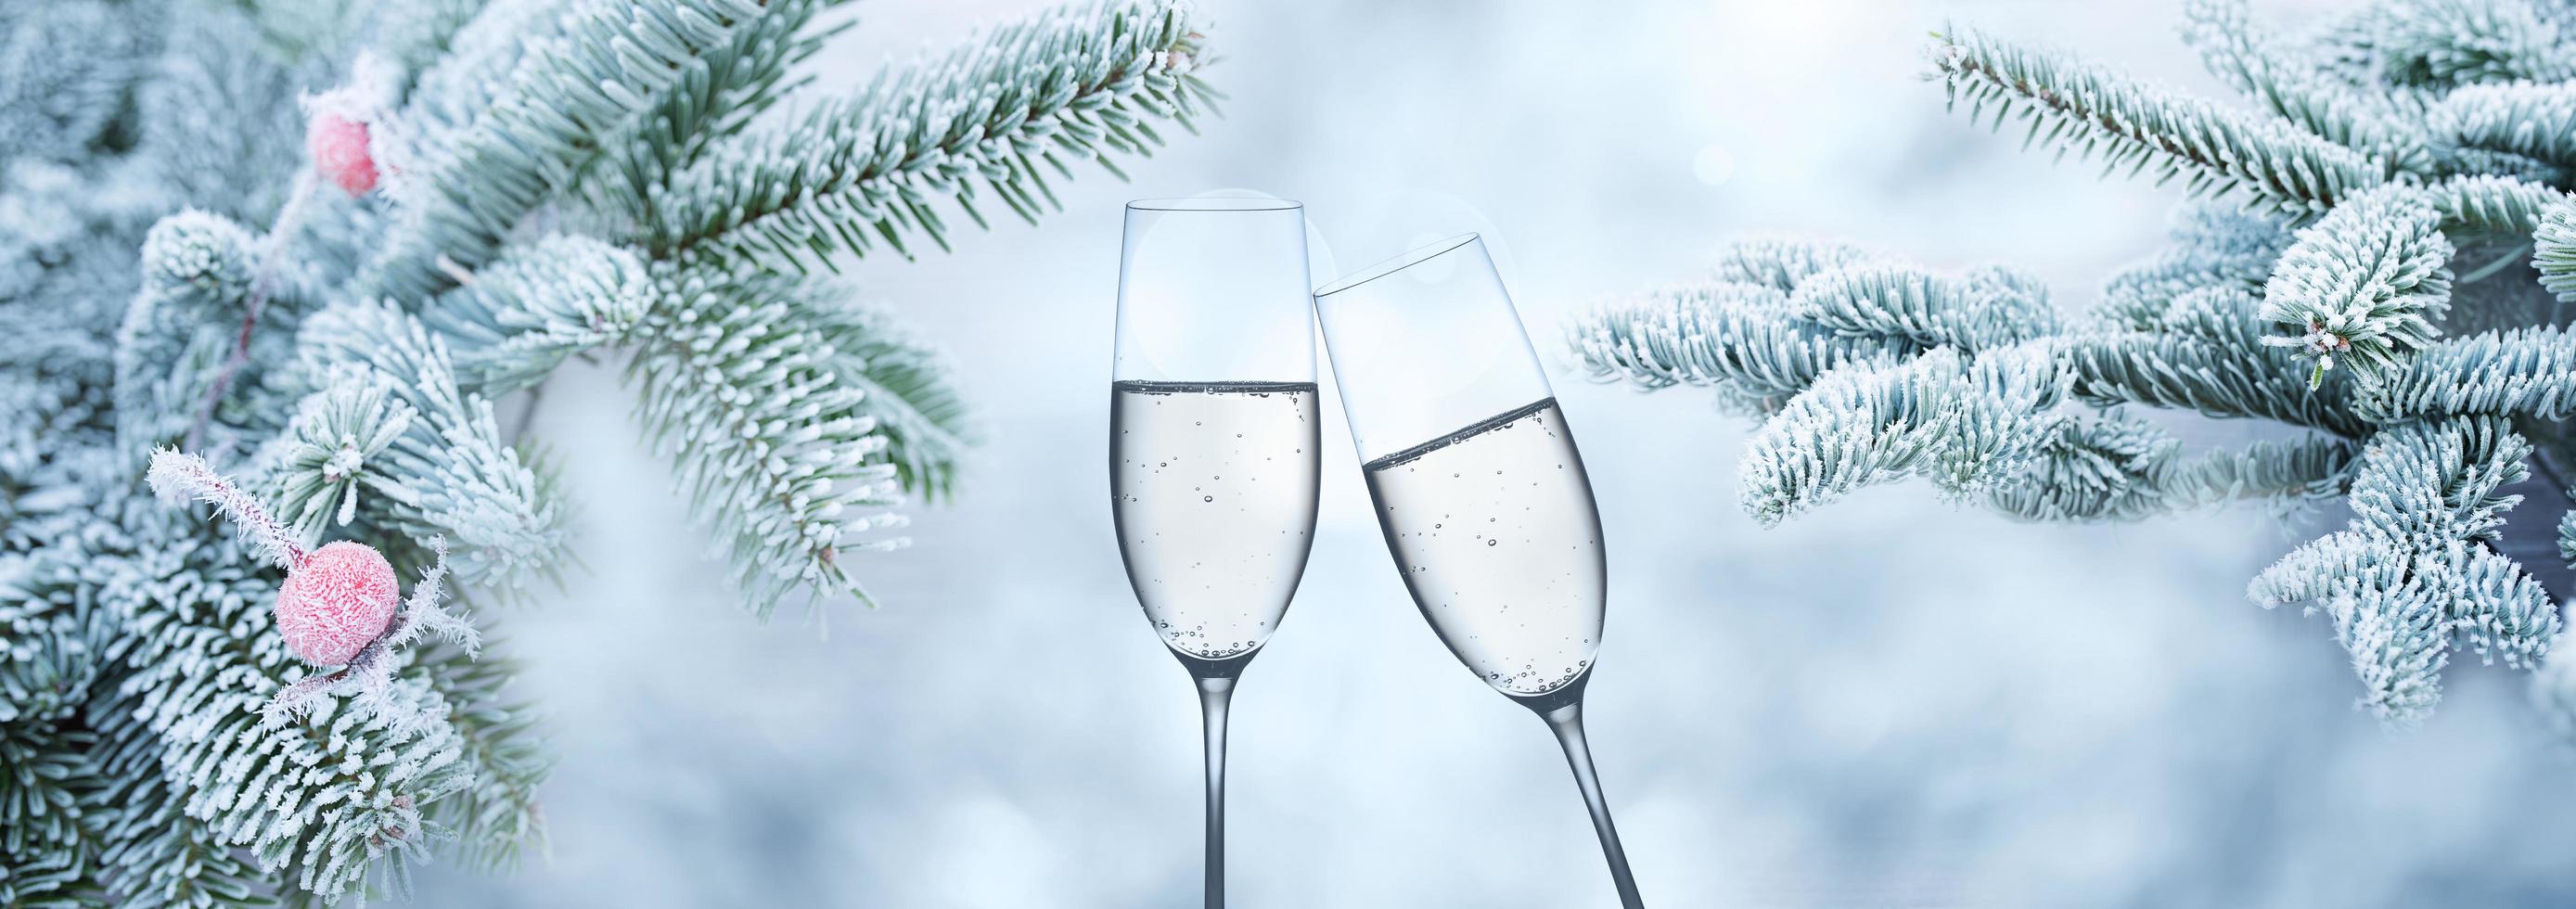 winterachtergrond met champagne voor felicitaties foto